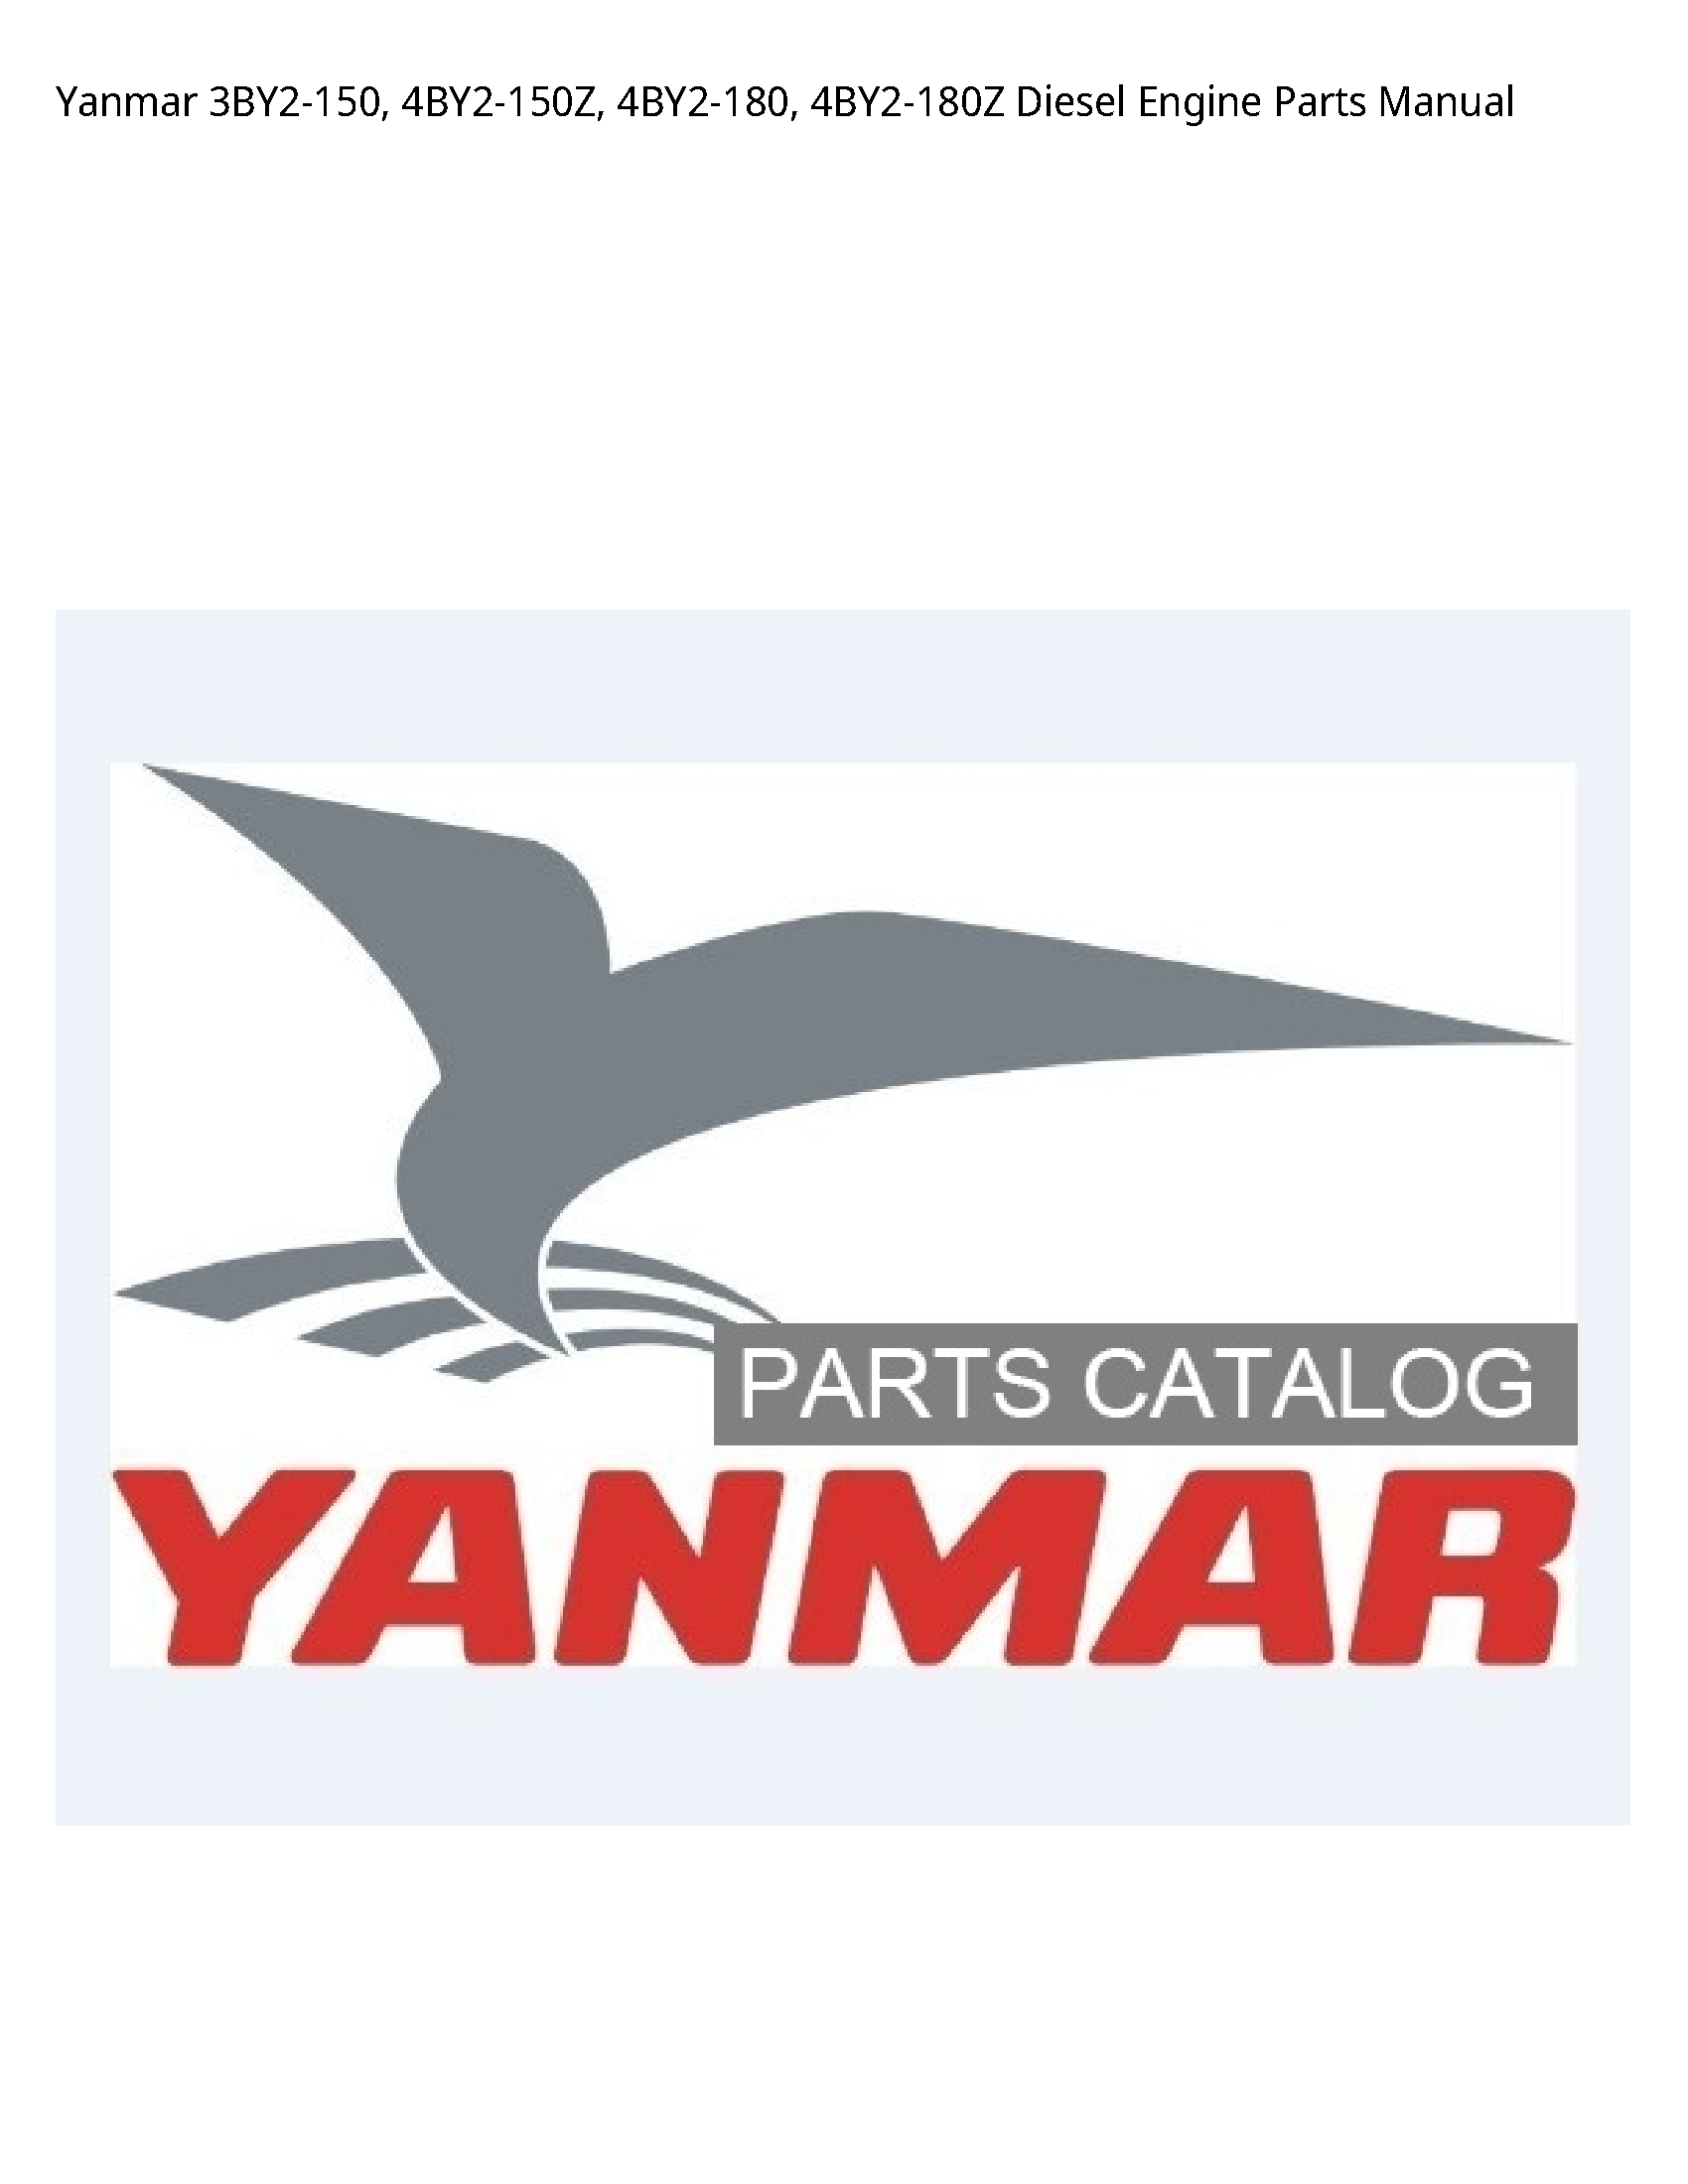 Yanmar 3BY2-150 Diesel Engine Parts manual